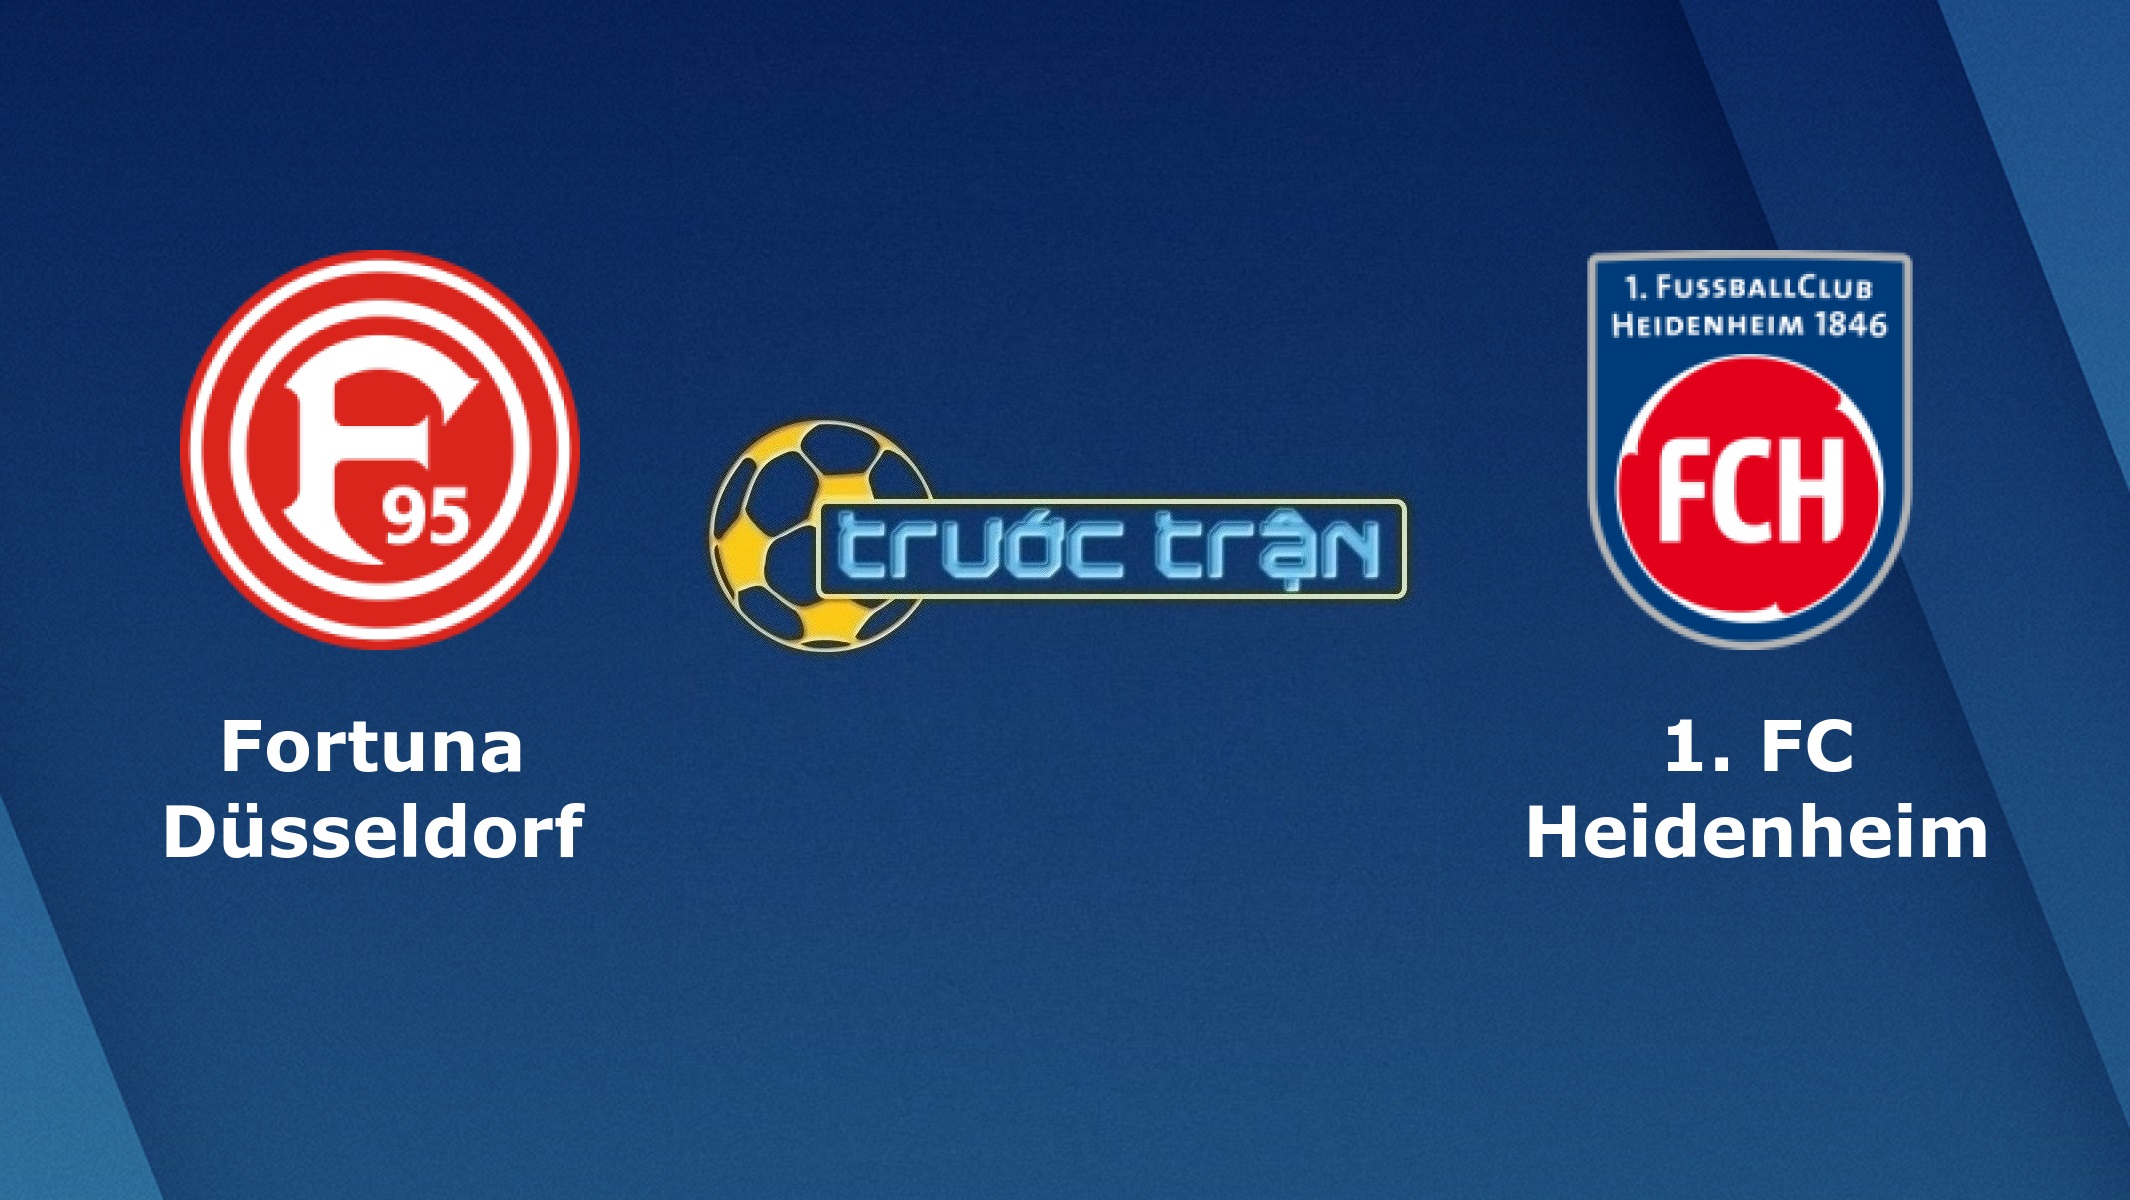 Fortuna Dusseldorf vs FC Heidenheim – Tip kèo bóng đá hôm nay – 00h30 31/10/2020